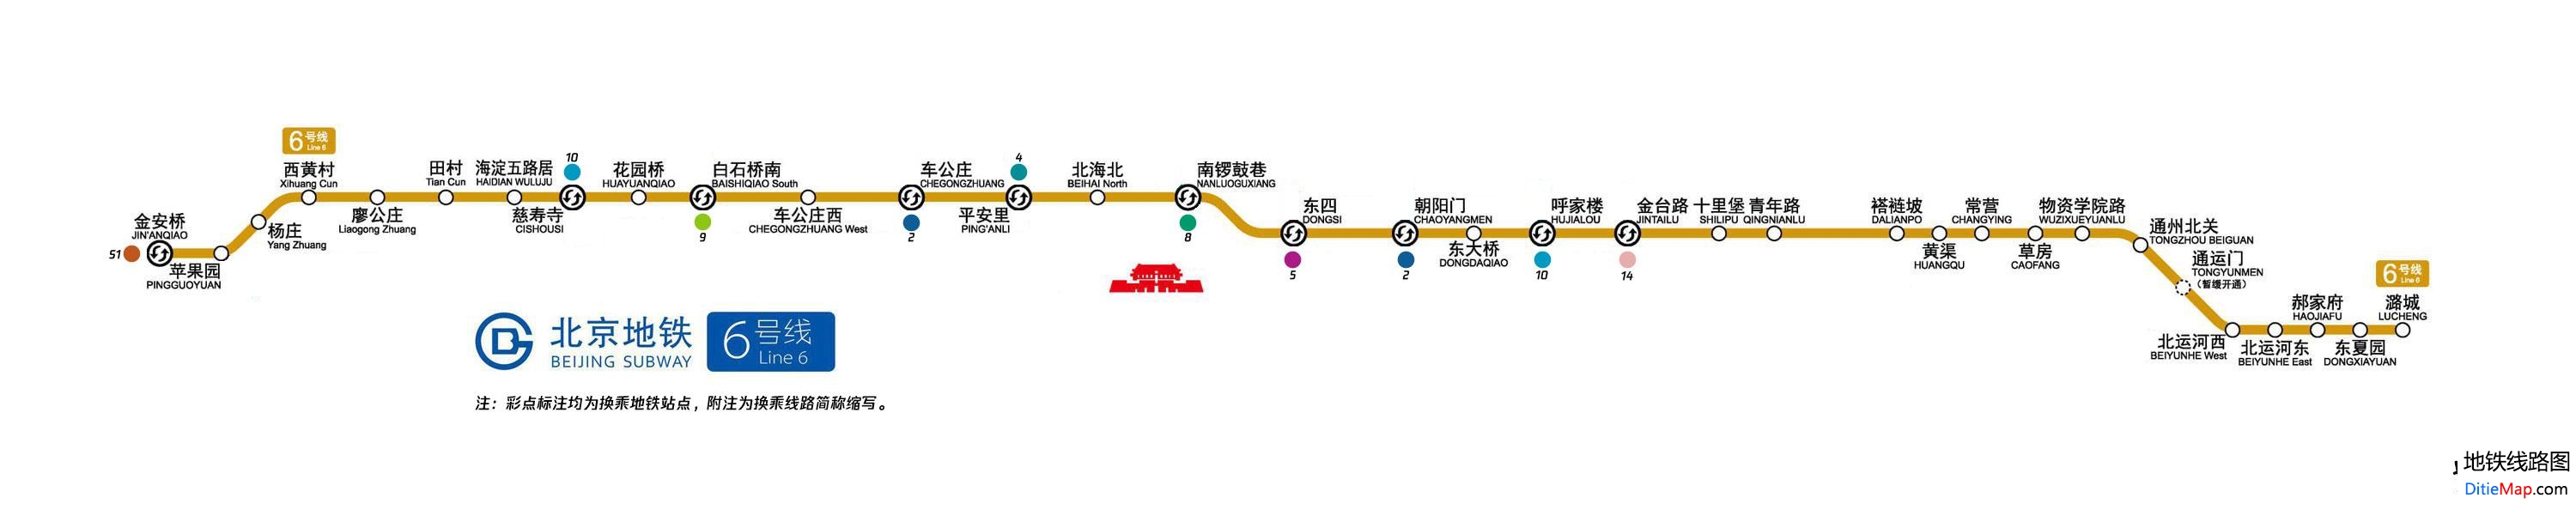 北京地铁6号线线路图 运营时间票价站点 查询下载 北京地铁6号线查询 北京地铁6号线运营时间 北京地铁6号线线路图 北京地铁六号线 北京地铁6号线 北京地铁线路图  第2张